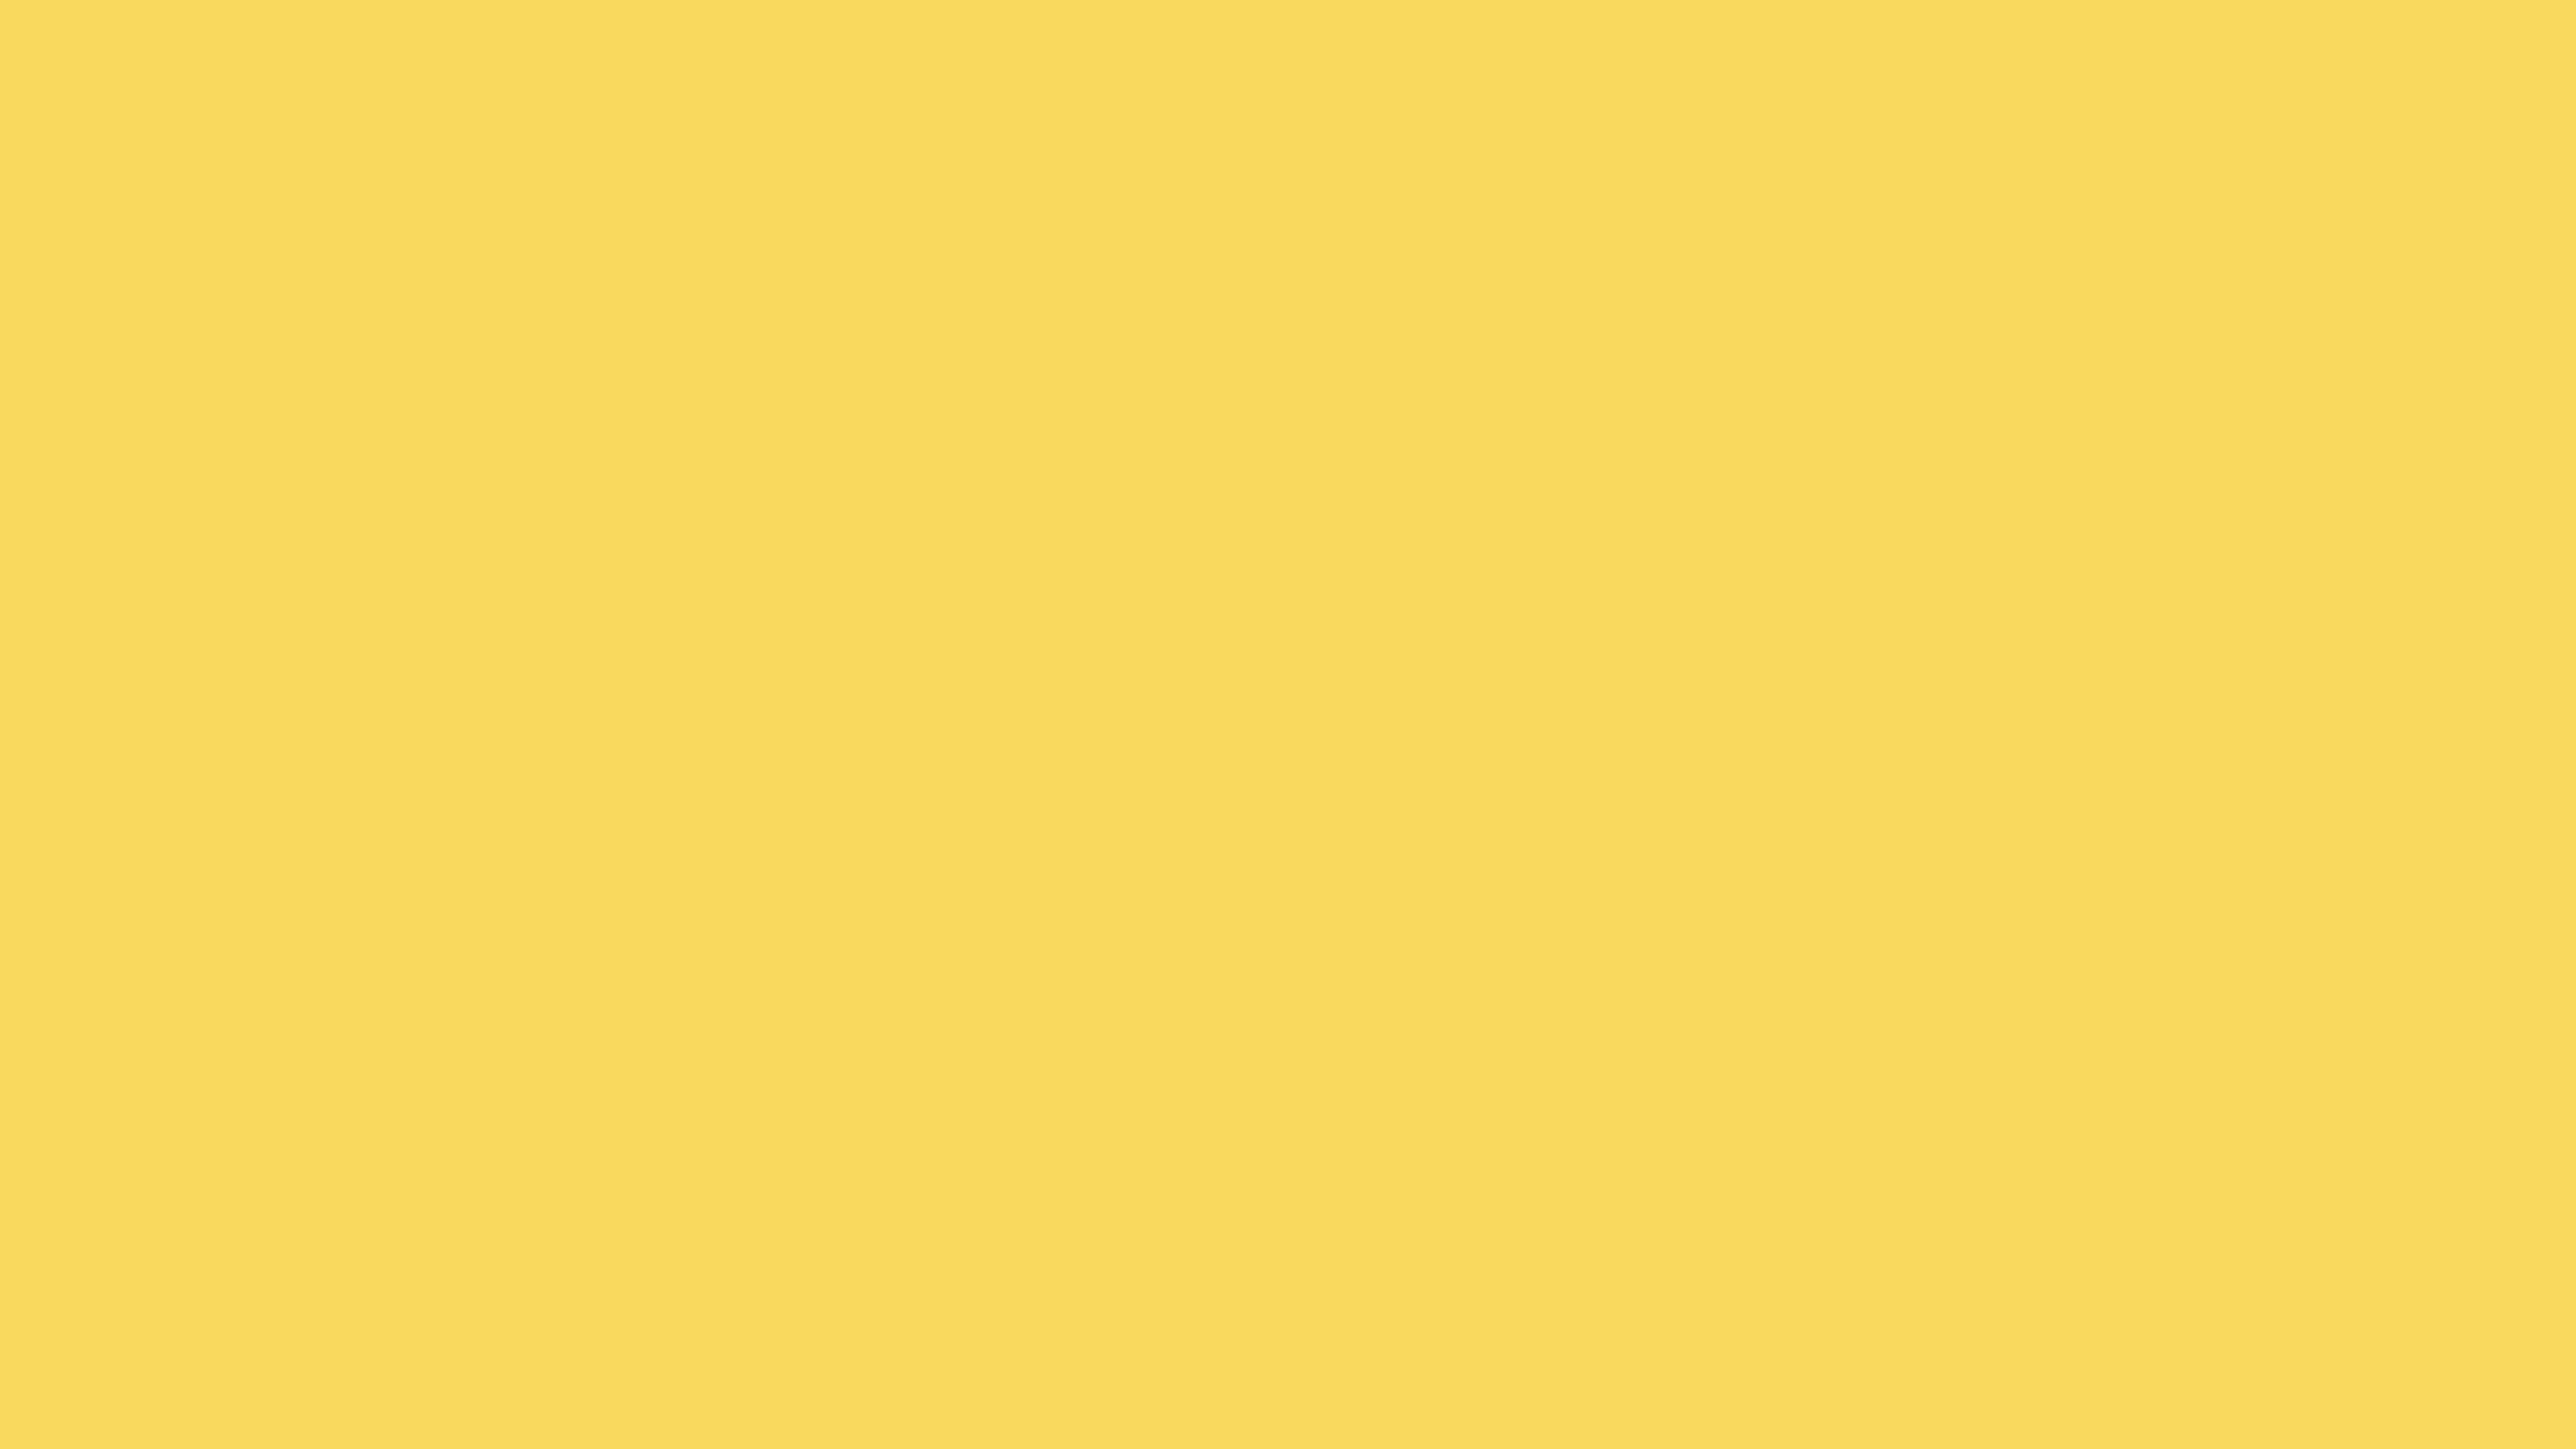 3840x2160 Stil De Grain Yellow Solid Color Background